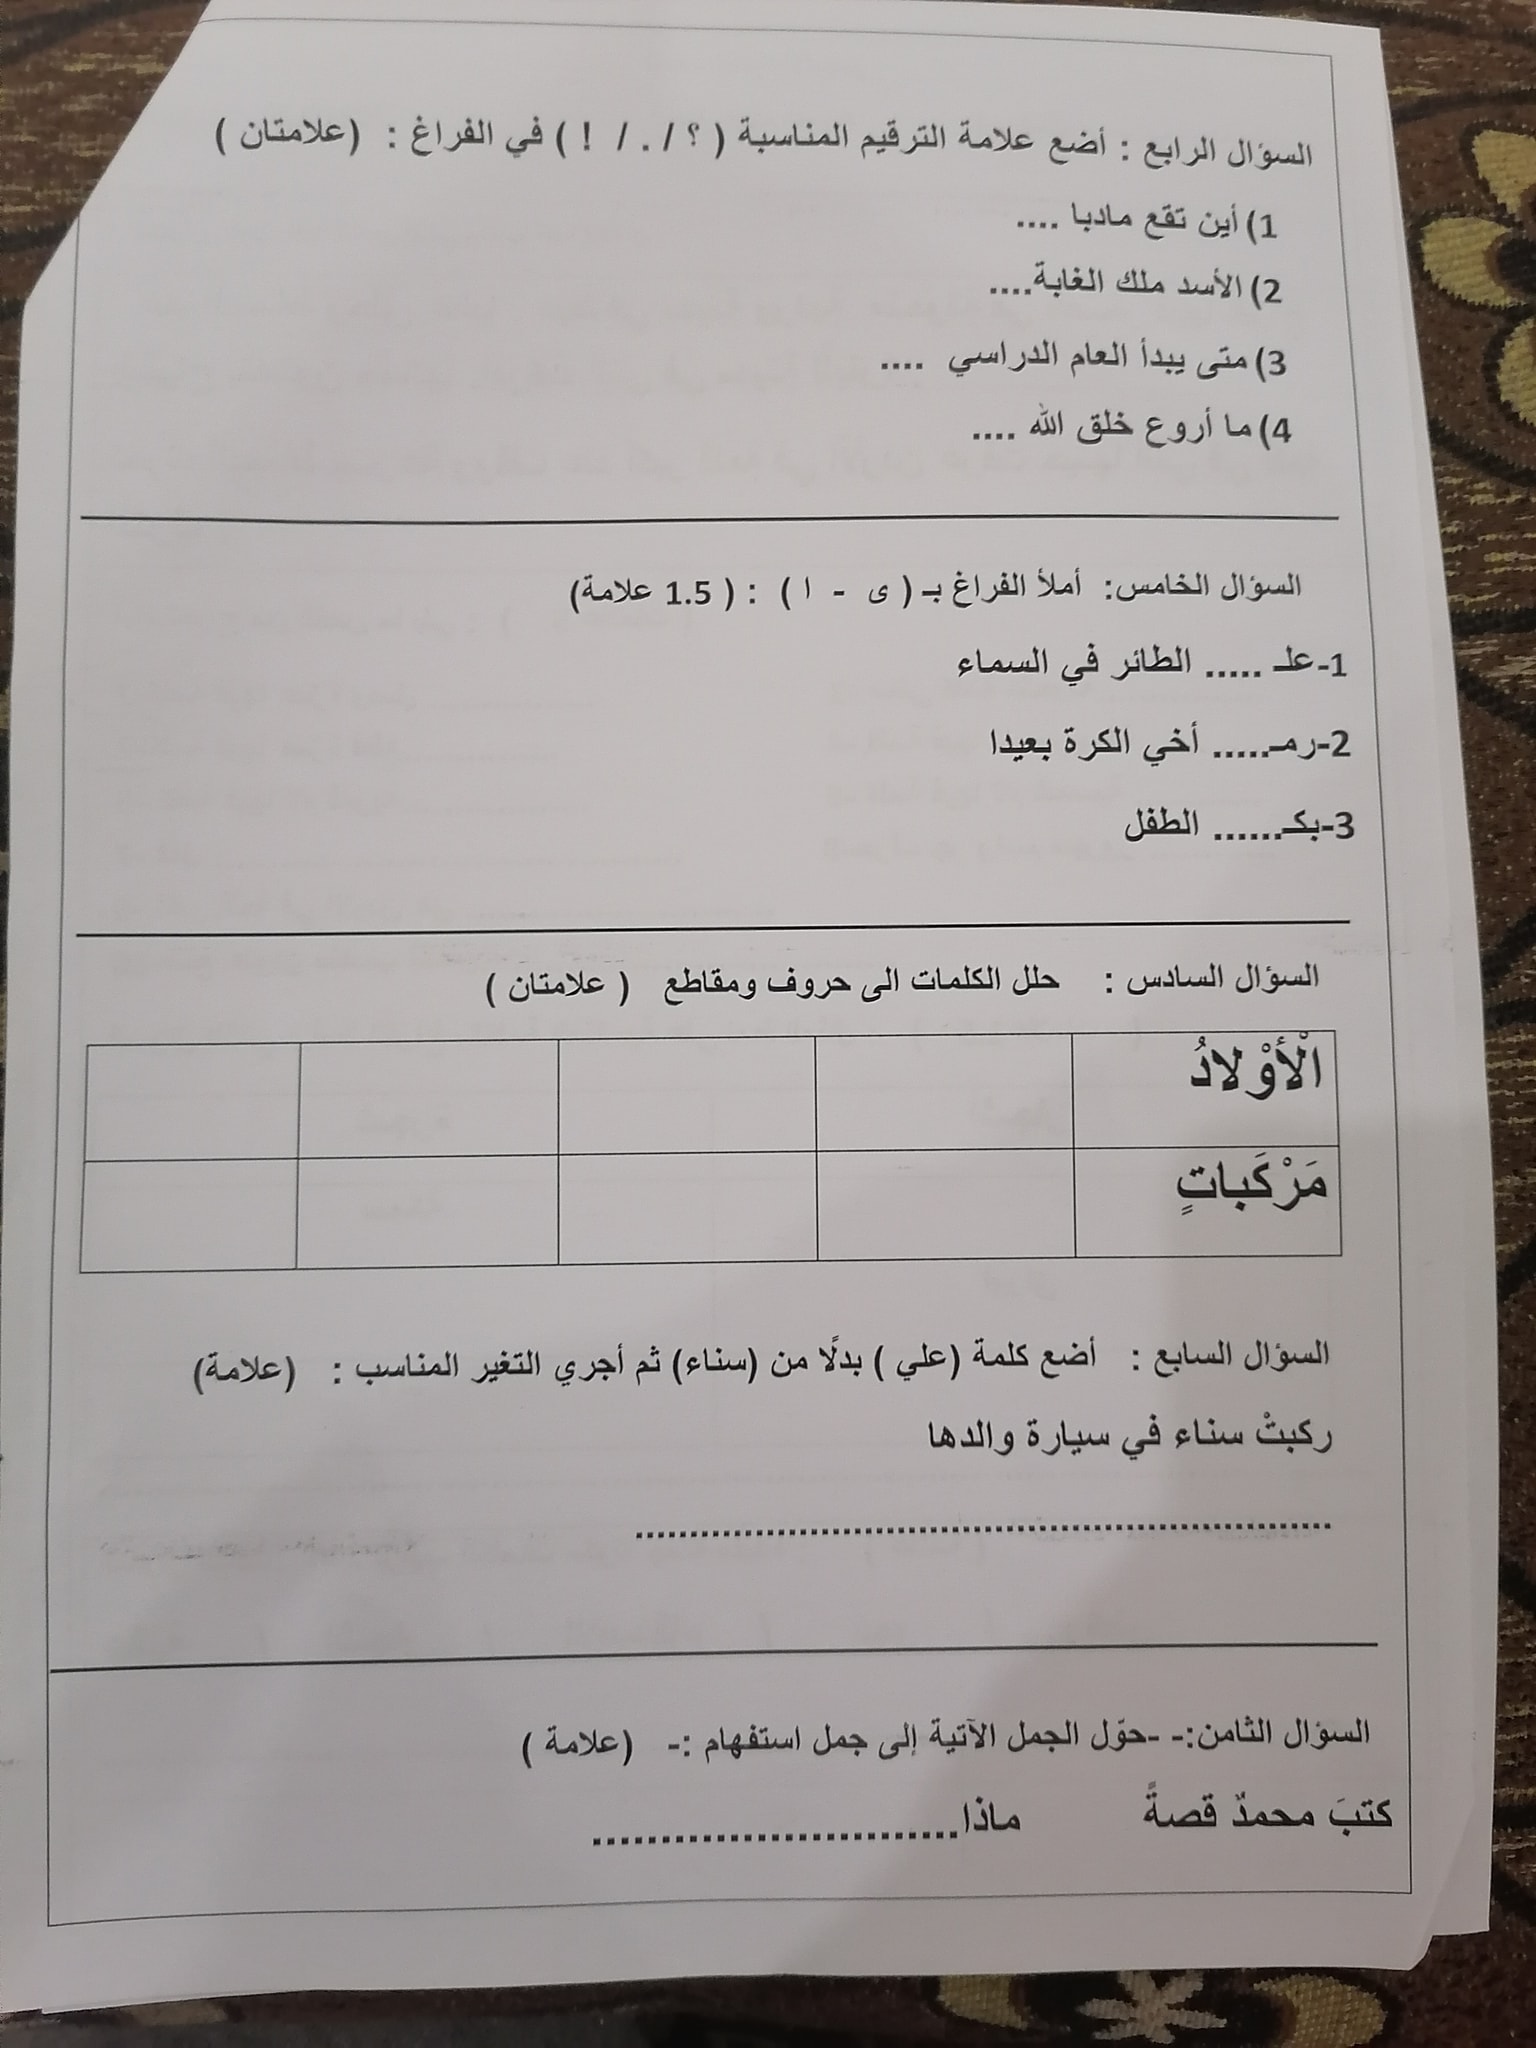 صور امتحان نهائي لمادة اللغة العربية للصف الثالث الفصل الاول 2021